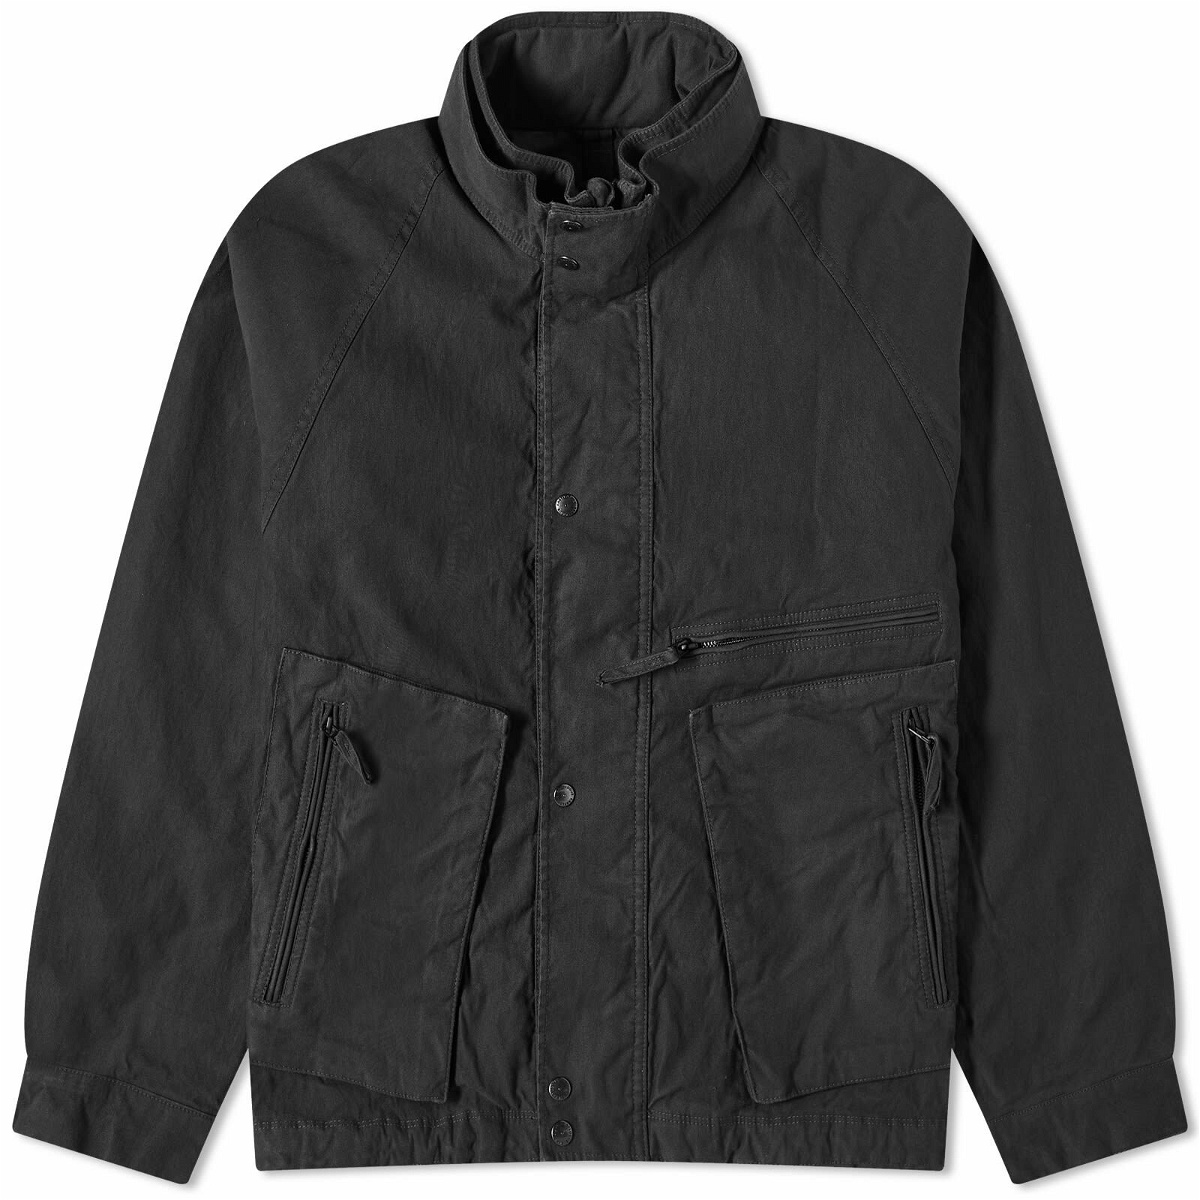 Eastlogue Men's Airbone Jacket in Black Eastlogue